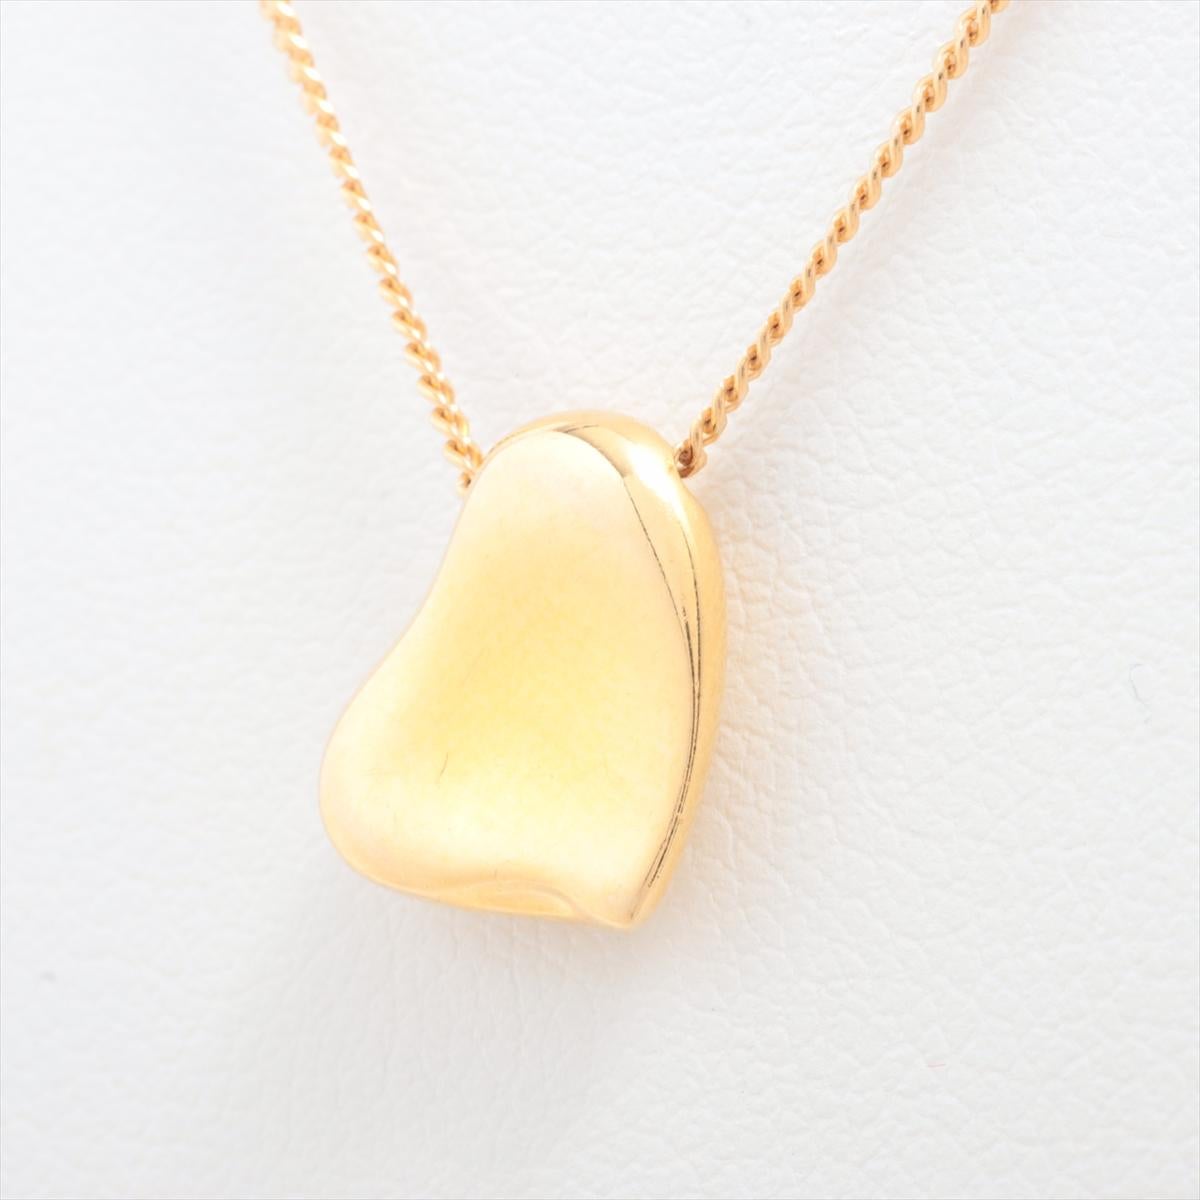 Die Tiffany & Co. Elsa Peretti Full Heart Pendant Necklace in Gold ist ein zeitloses und elegantes Schmuckstück, das Raffinesse und Charme ausstrahlt. Die von der renommierten Designerin Elsa Peretti entworfene Halskette besteht aus einem zarten